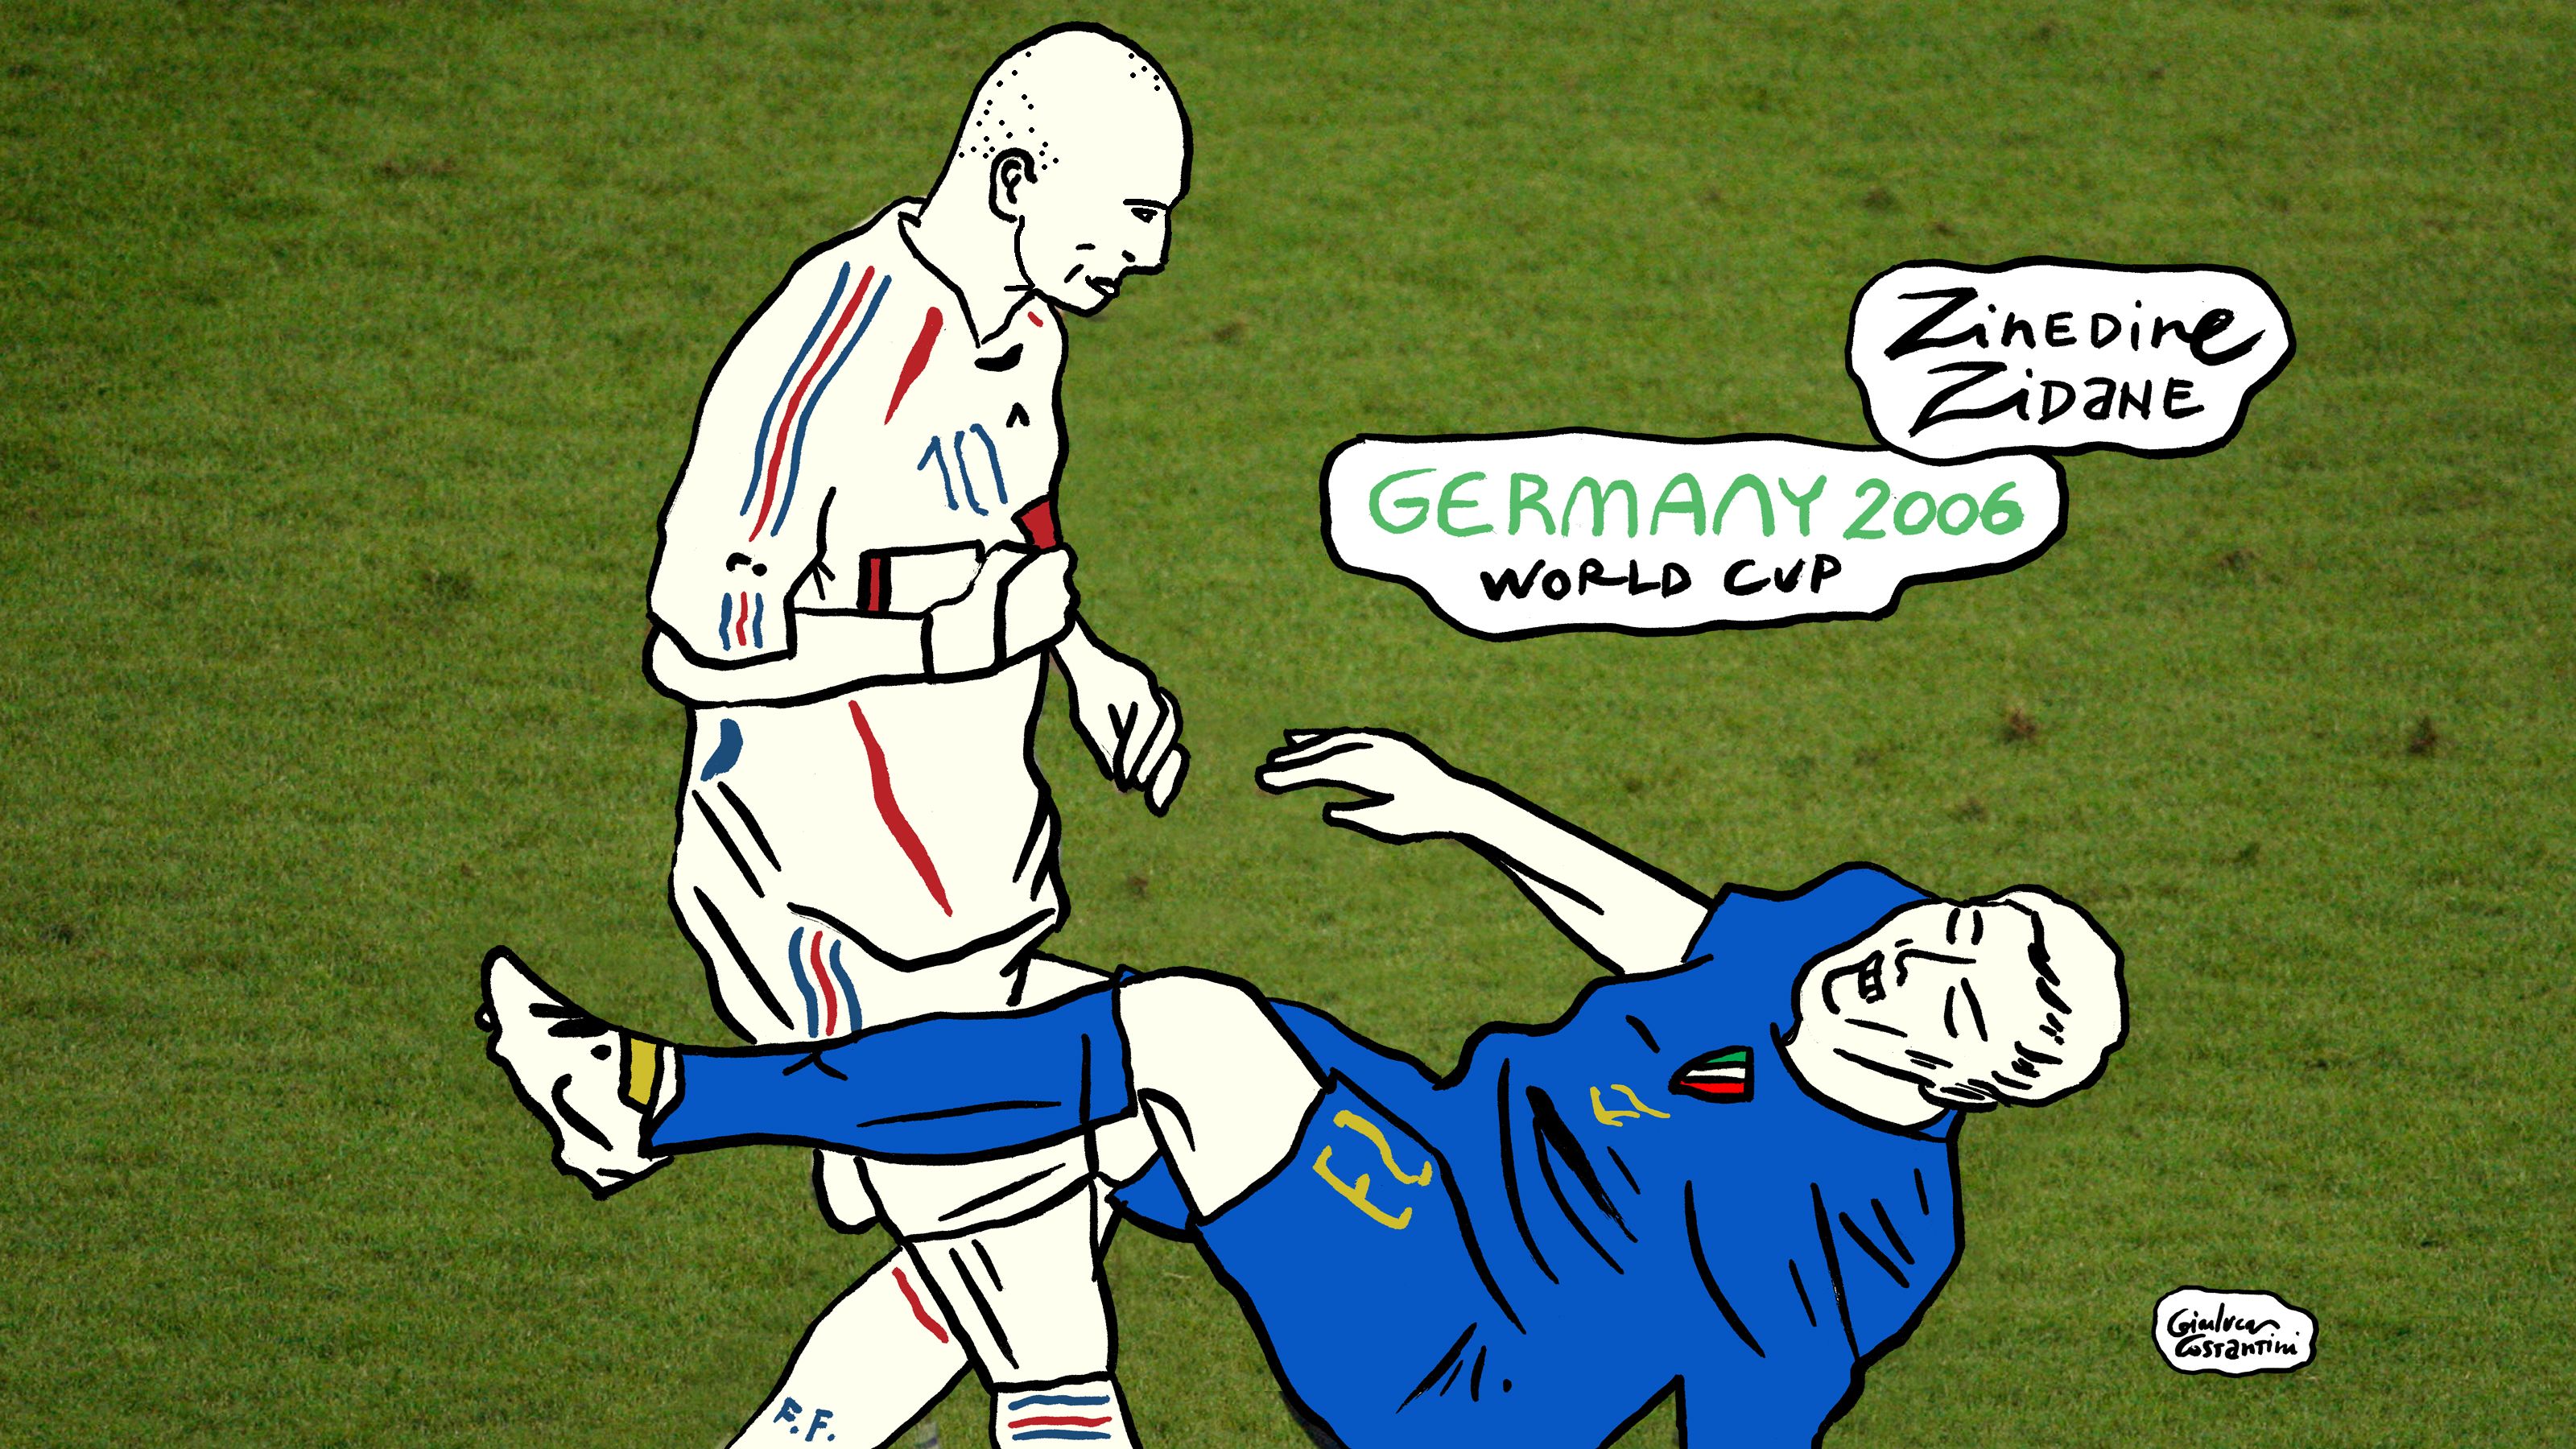 Zinedine Zidane Rocked By The Death Of Pele - zidane